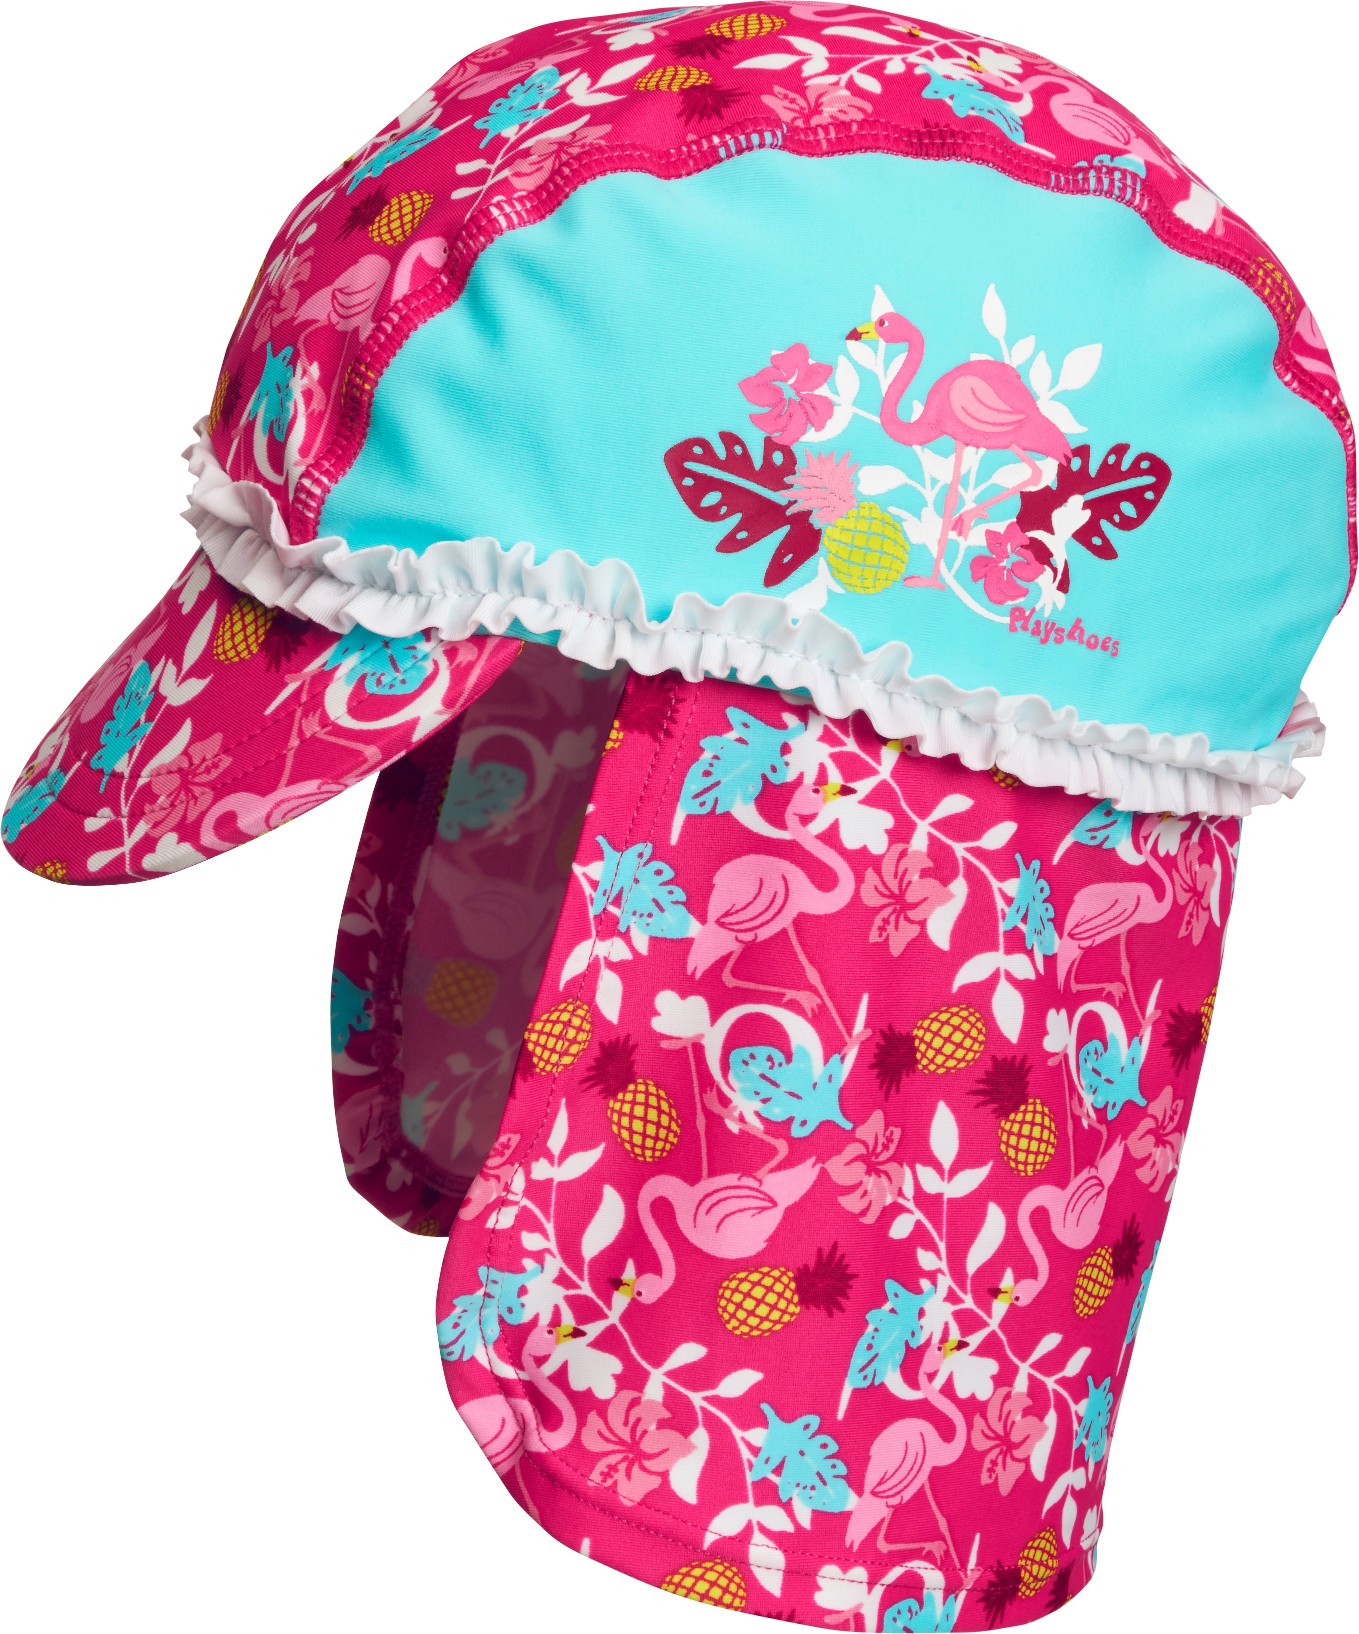 Playshoes - UV sun cap for girls - Flamingo - Aqua blue / pink